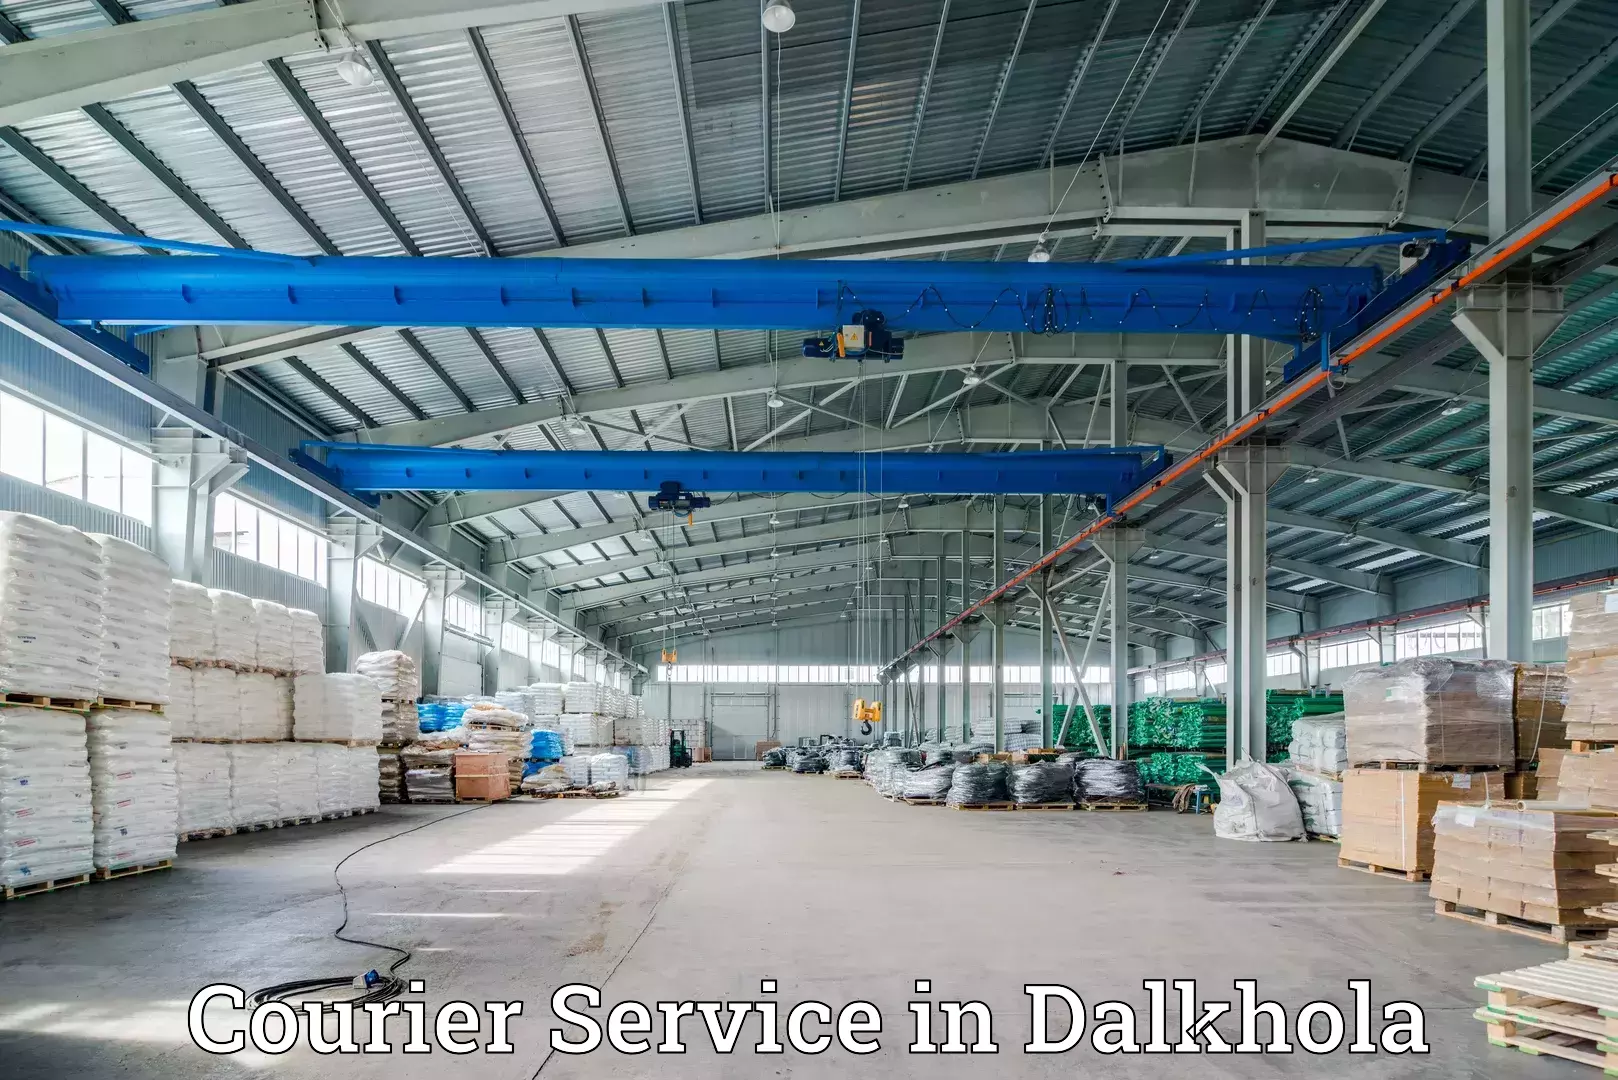 International parcel service in Dalkhola